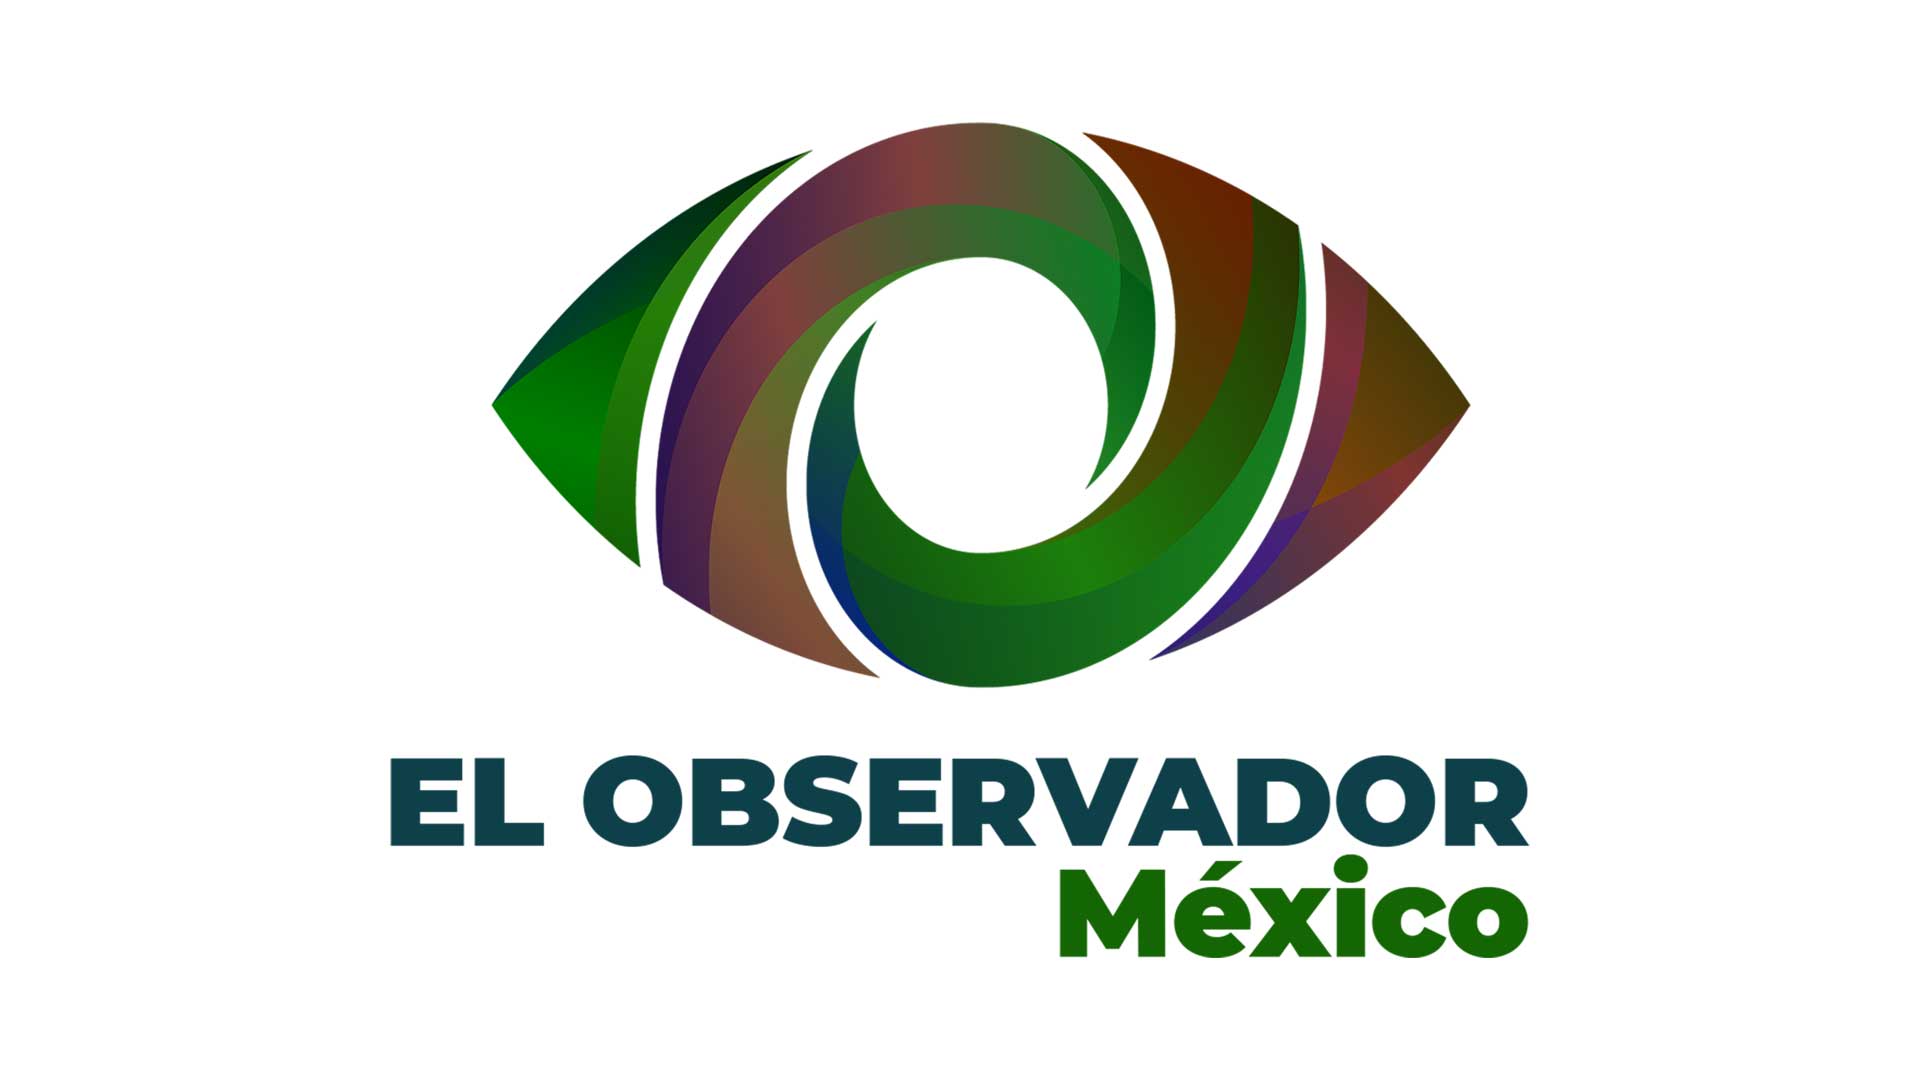 El Observador Mexico